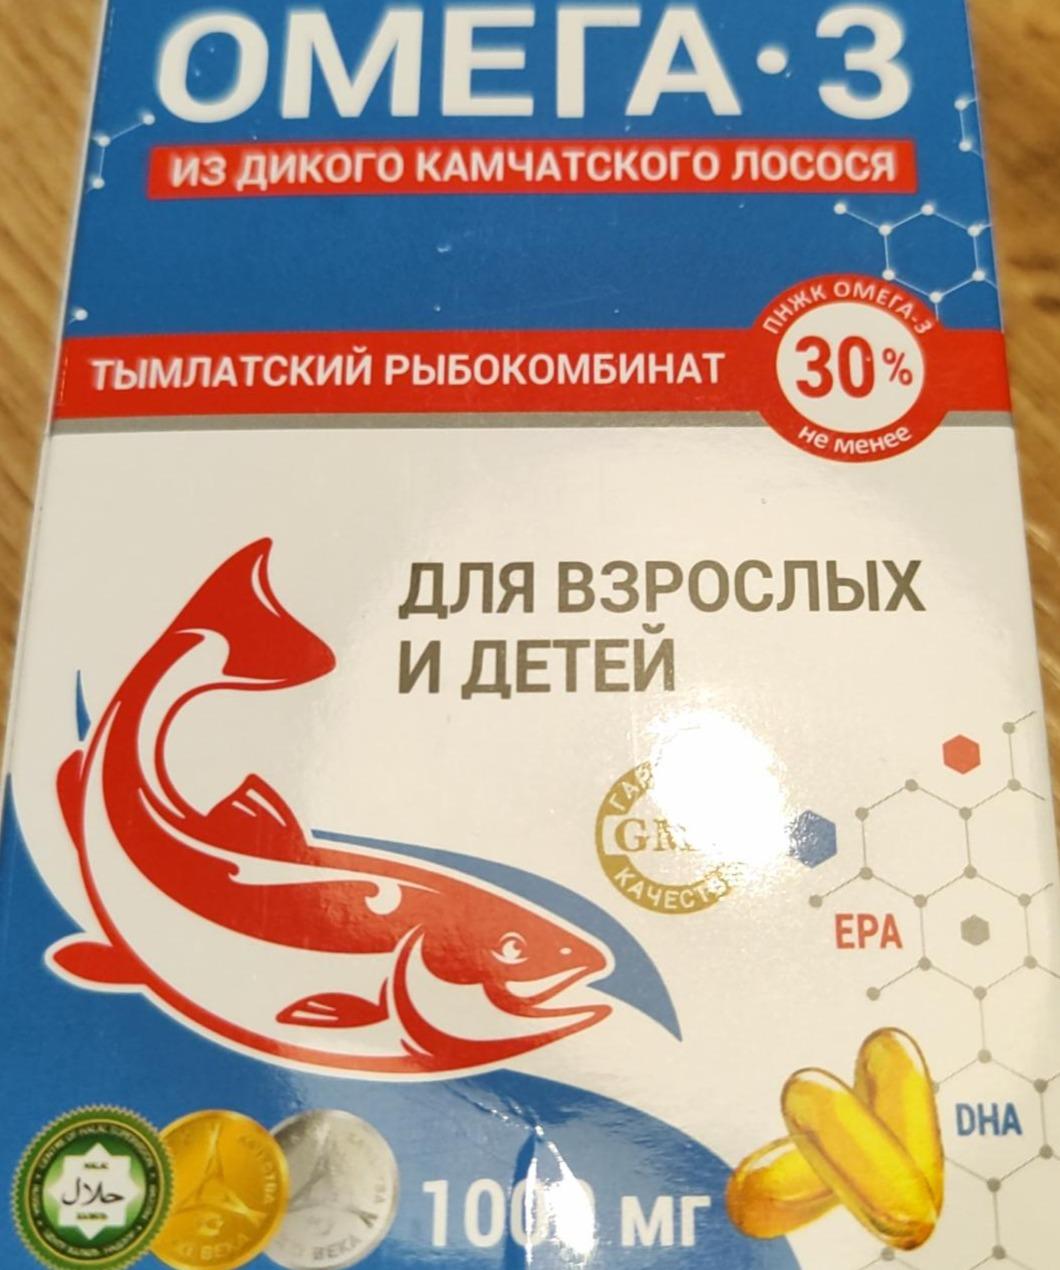 Фото - Омега-3 из дикого камчатского лосося для взрослых и детей Тымлатский рыбокомбинат